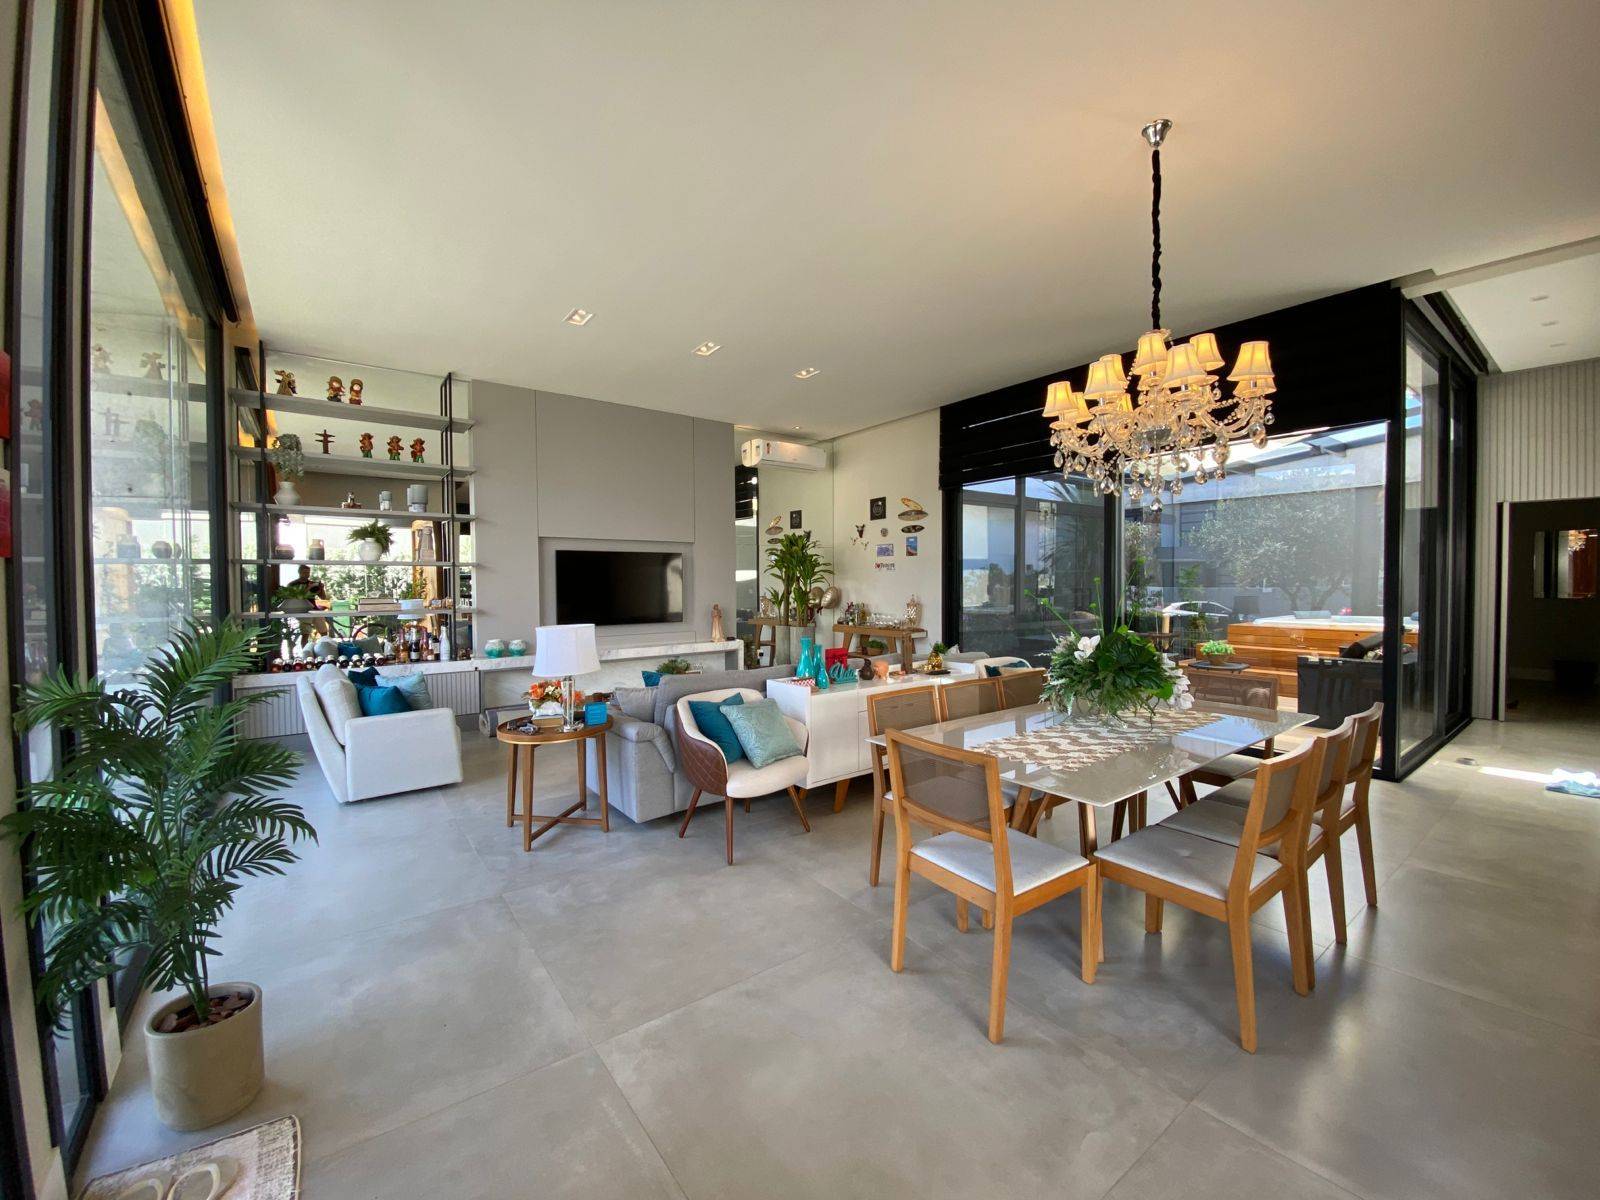 Casa em Condomínio 4 dormitórios para venda, Velas da Marina | Ref.: 7391